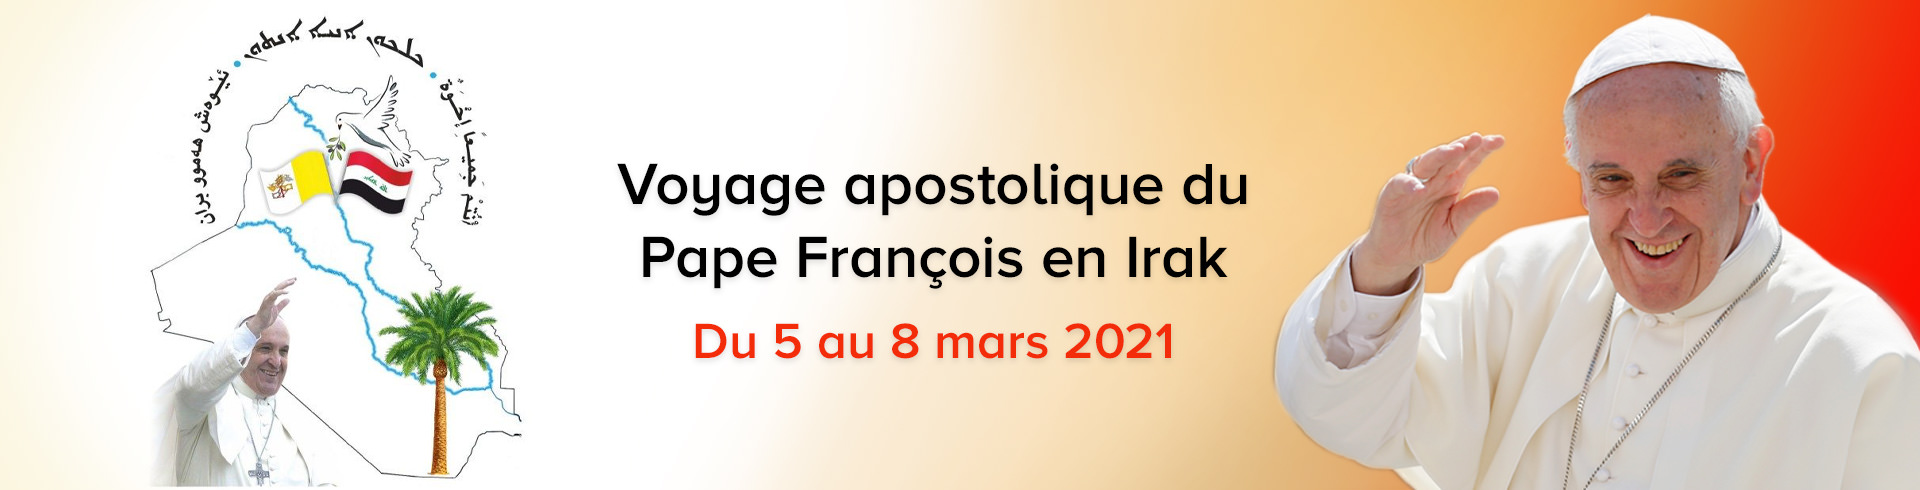 VOYAGE APOSTOLIQUE DU PAPE FRANÇOIS EN IRAK